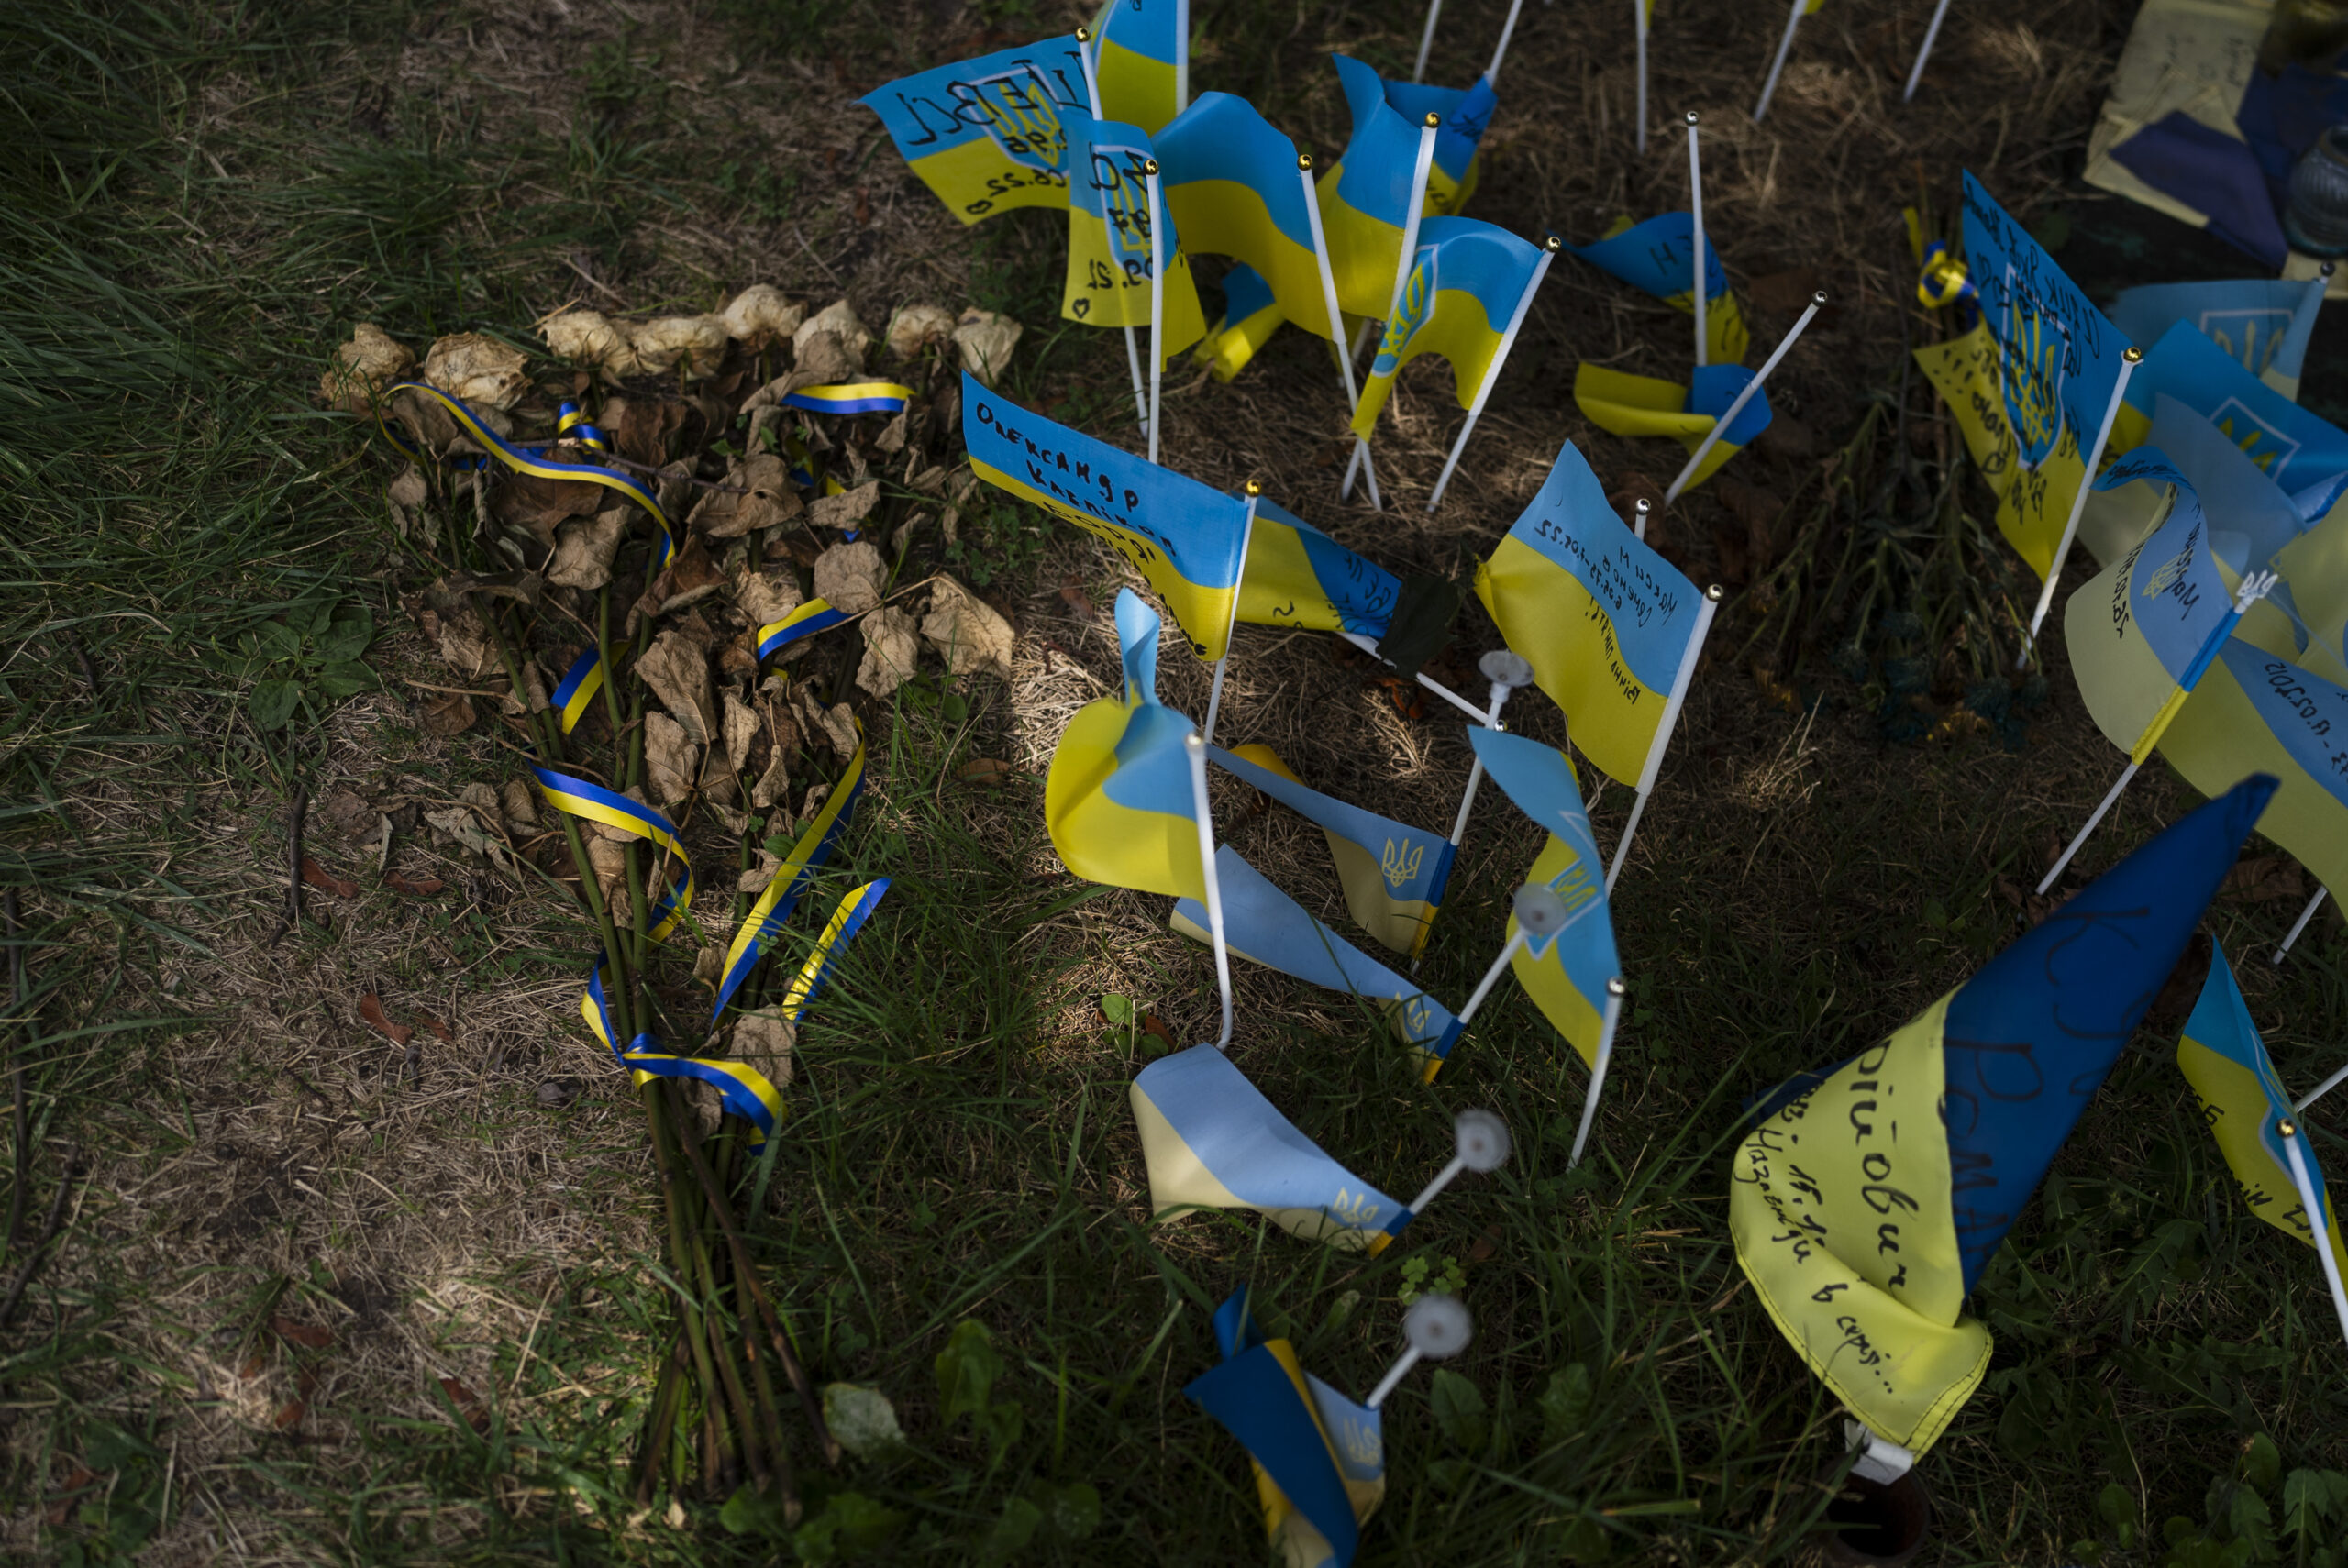 Ρωσία: Δύο άνδρες καταδικάστηκαν σε φυλάκιση επειδή αντιτάχθηκαν στον πόλεμο στην Ουκρανία